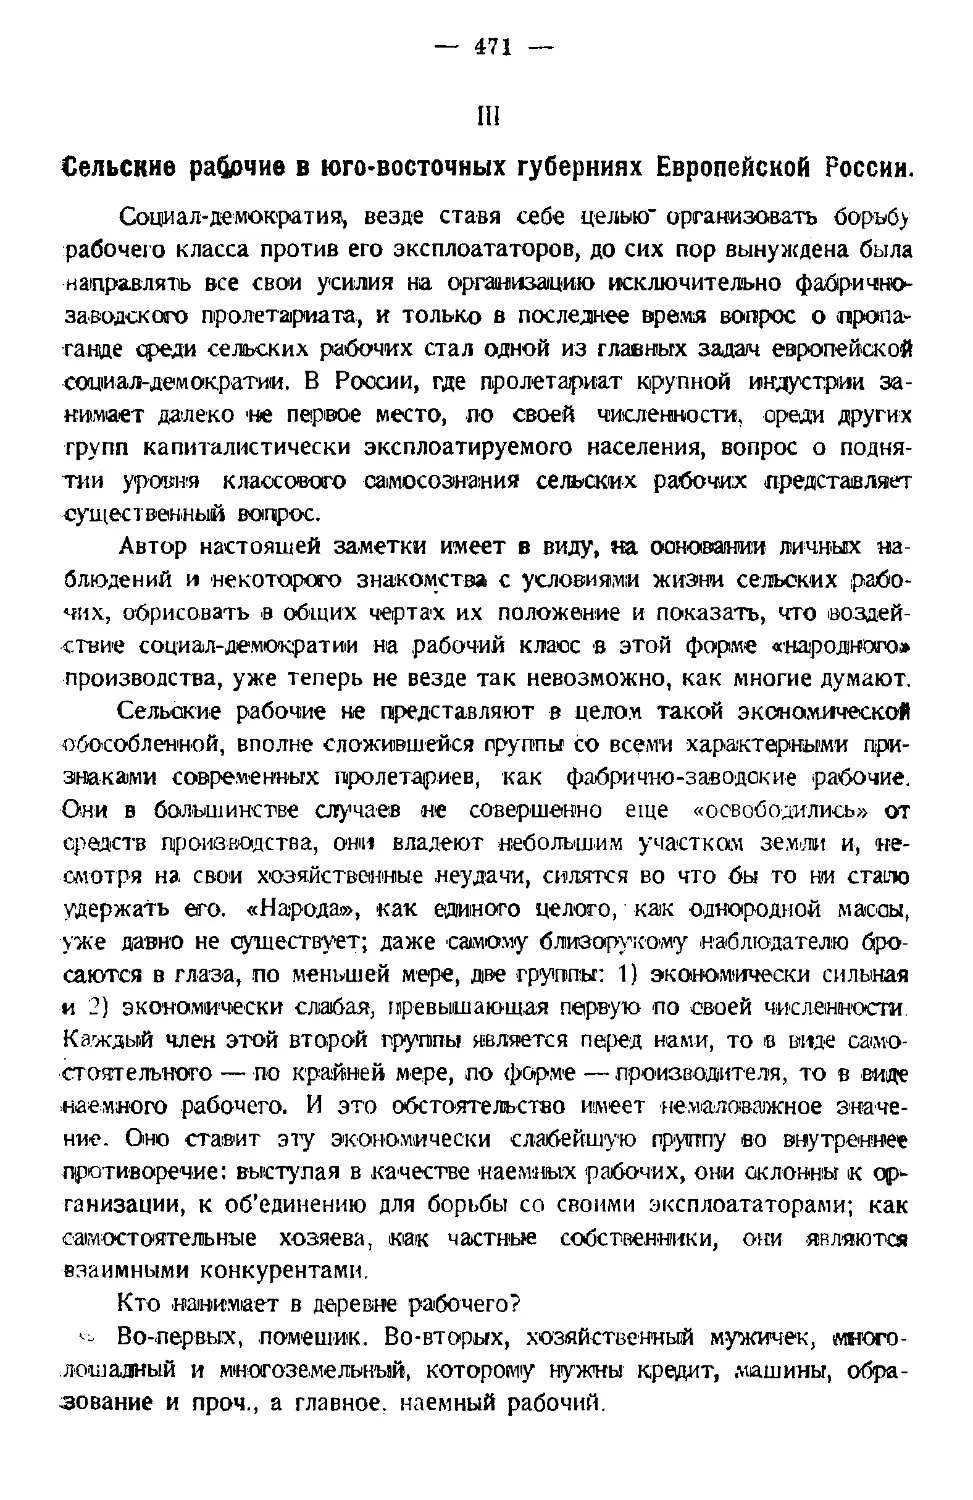 III. Сельские рабочие в юго-восточных губерниях Европейской России.